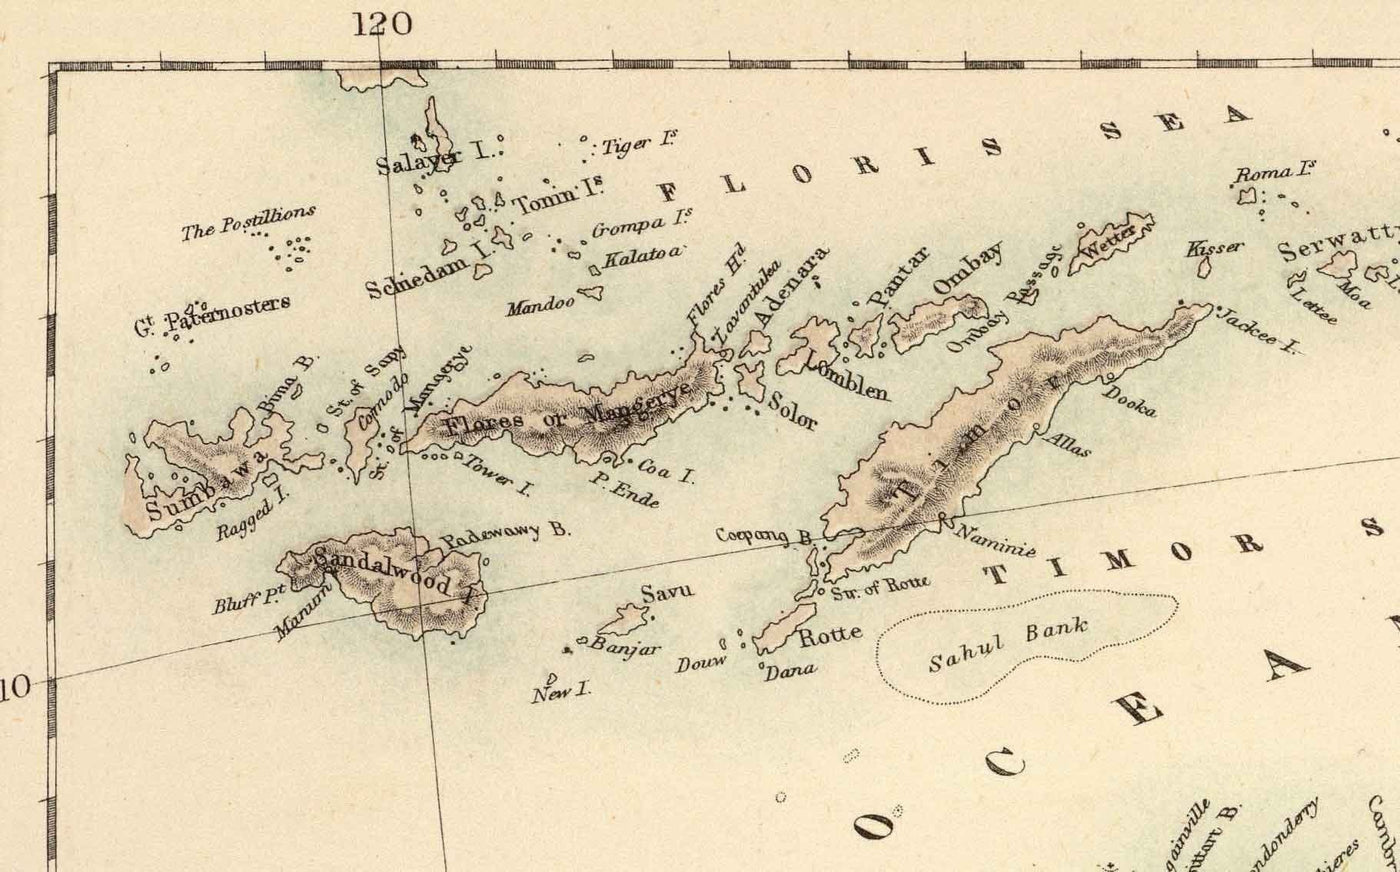 Mapa antiguo de Australia y Nueva Zelanda, 1872 por Fullarton - Tasmania, Van Diemens Land, Sydney, Auckland, Victoria, NSW